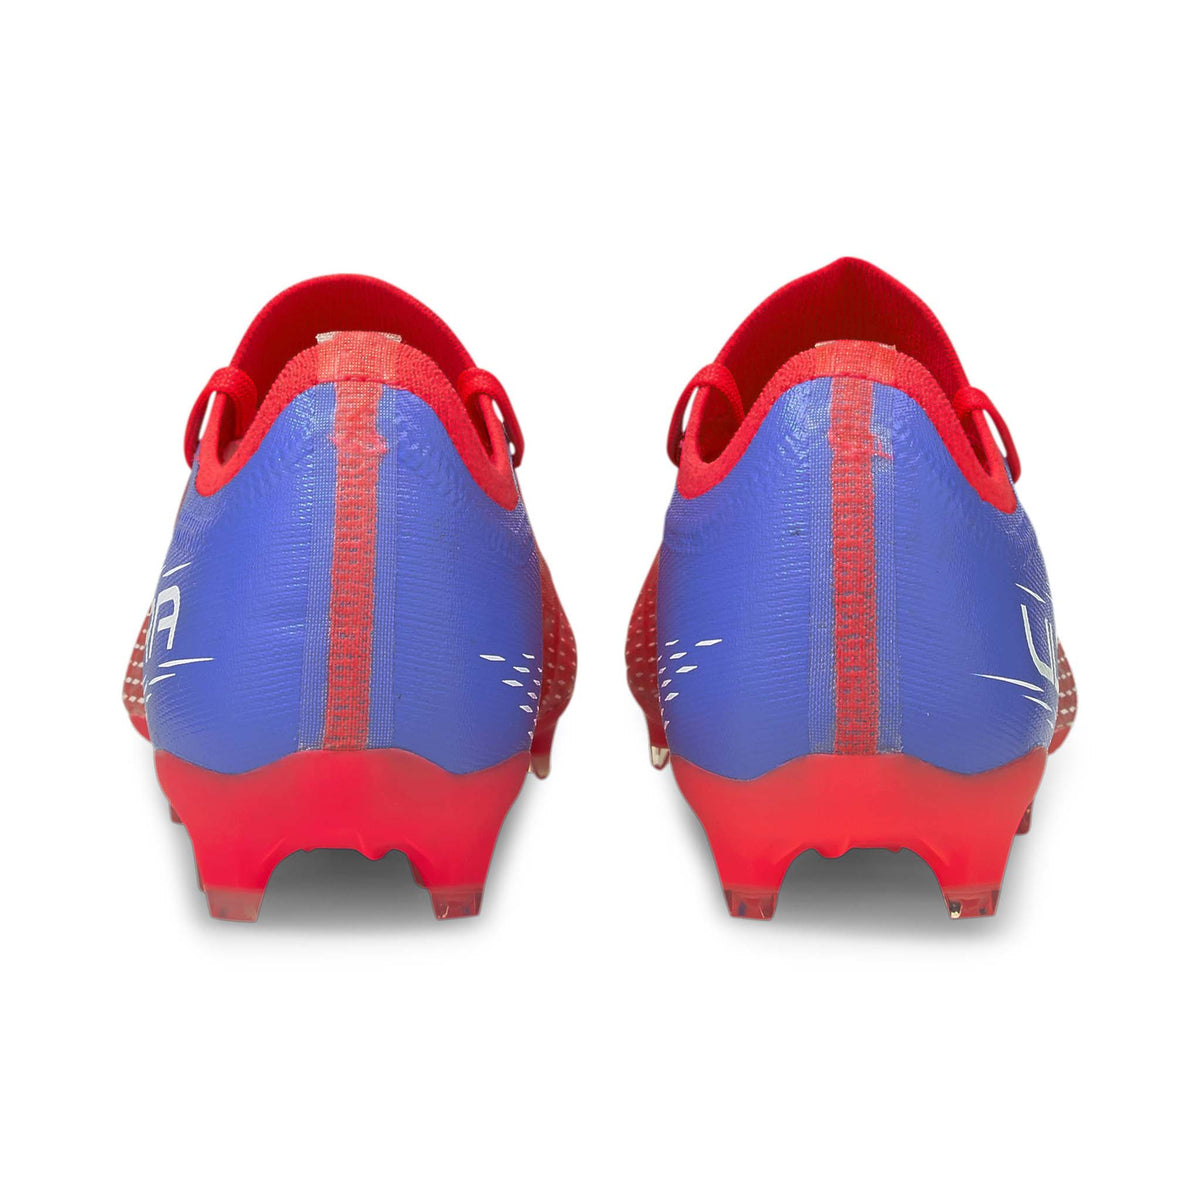 Puma Ultra 3.3 FG/AG chaussures de soccer pour adulte talon